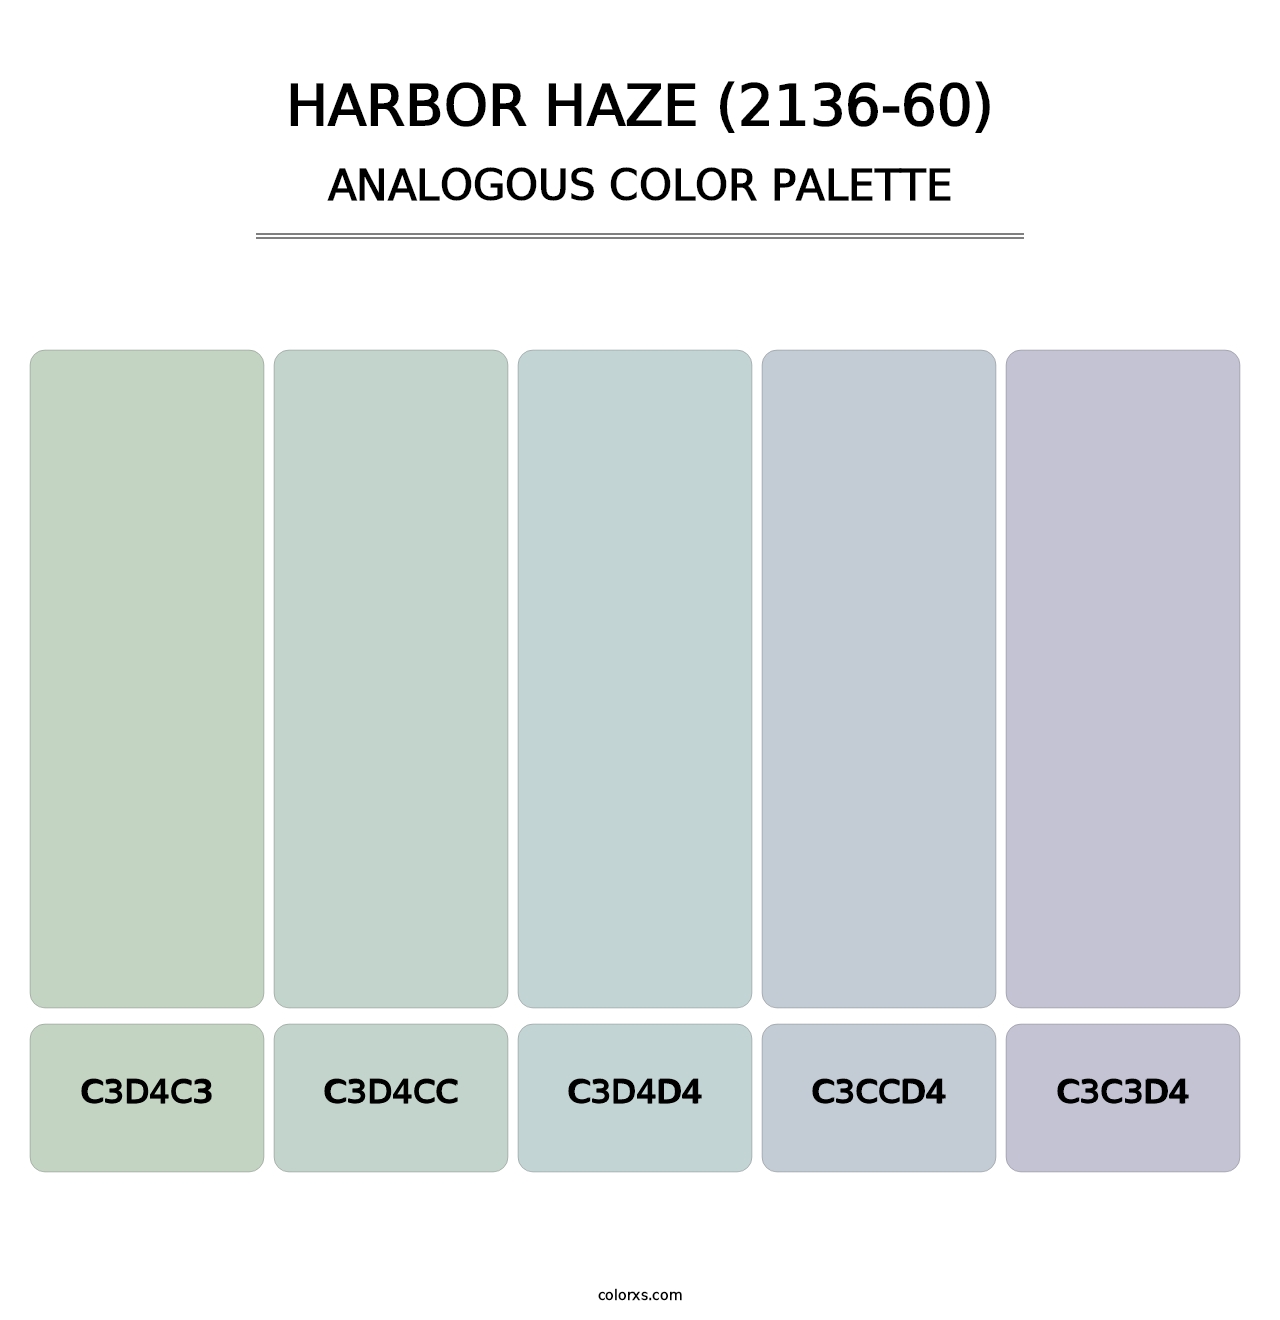 Harbor Haze (2136-60) - Analogous Color Palette